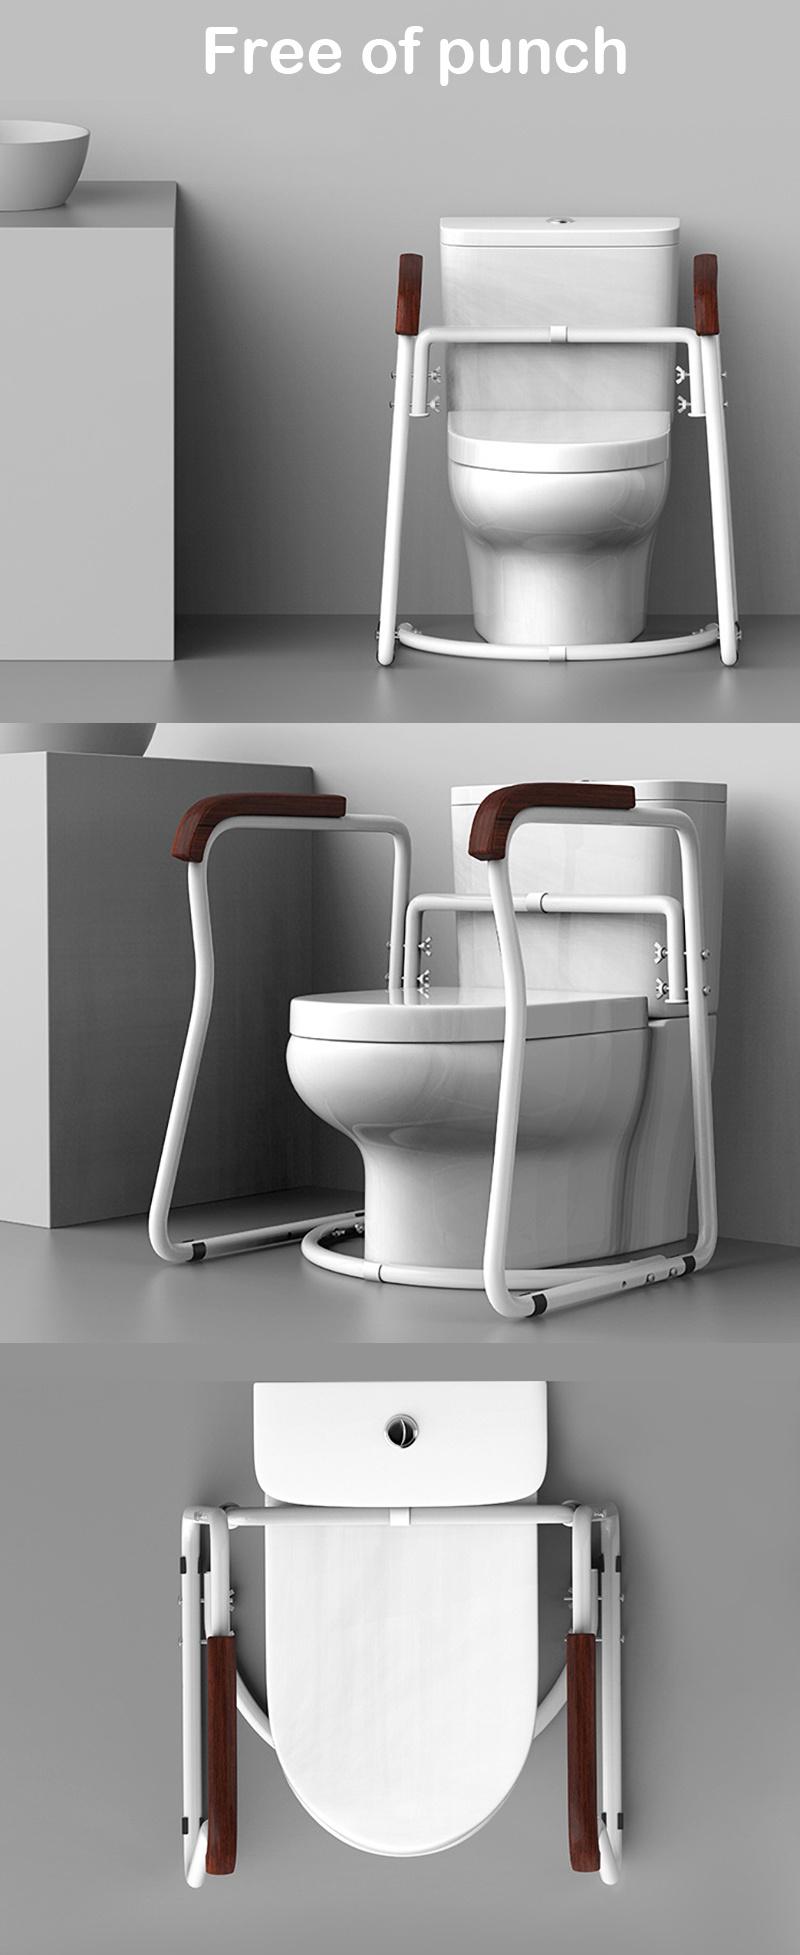 Bathroom Toilet Toilet Handrail Safety Handrails for The Elderly and Disabled Prevent Slippery Armrest